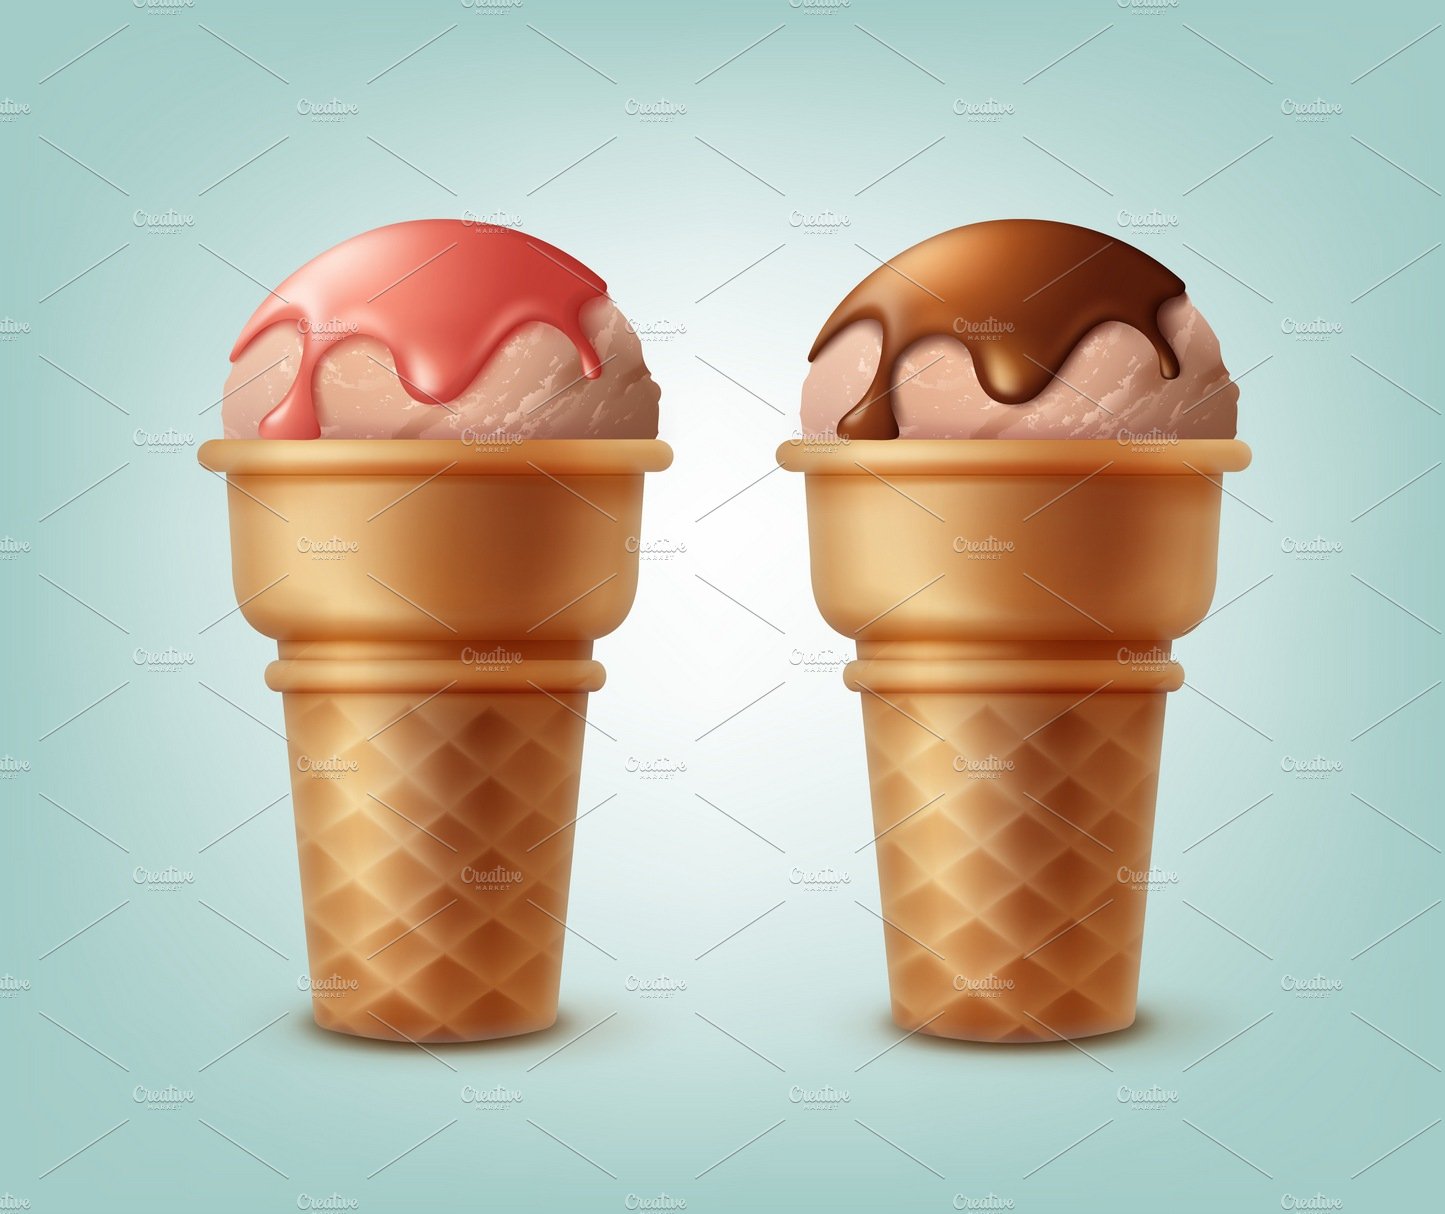 Ice creams in waffle cones cover image.